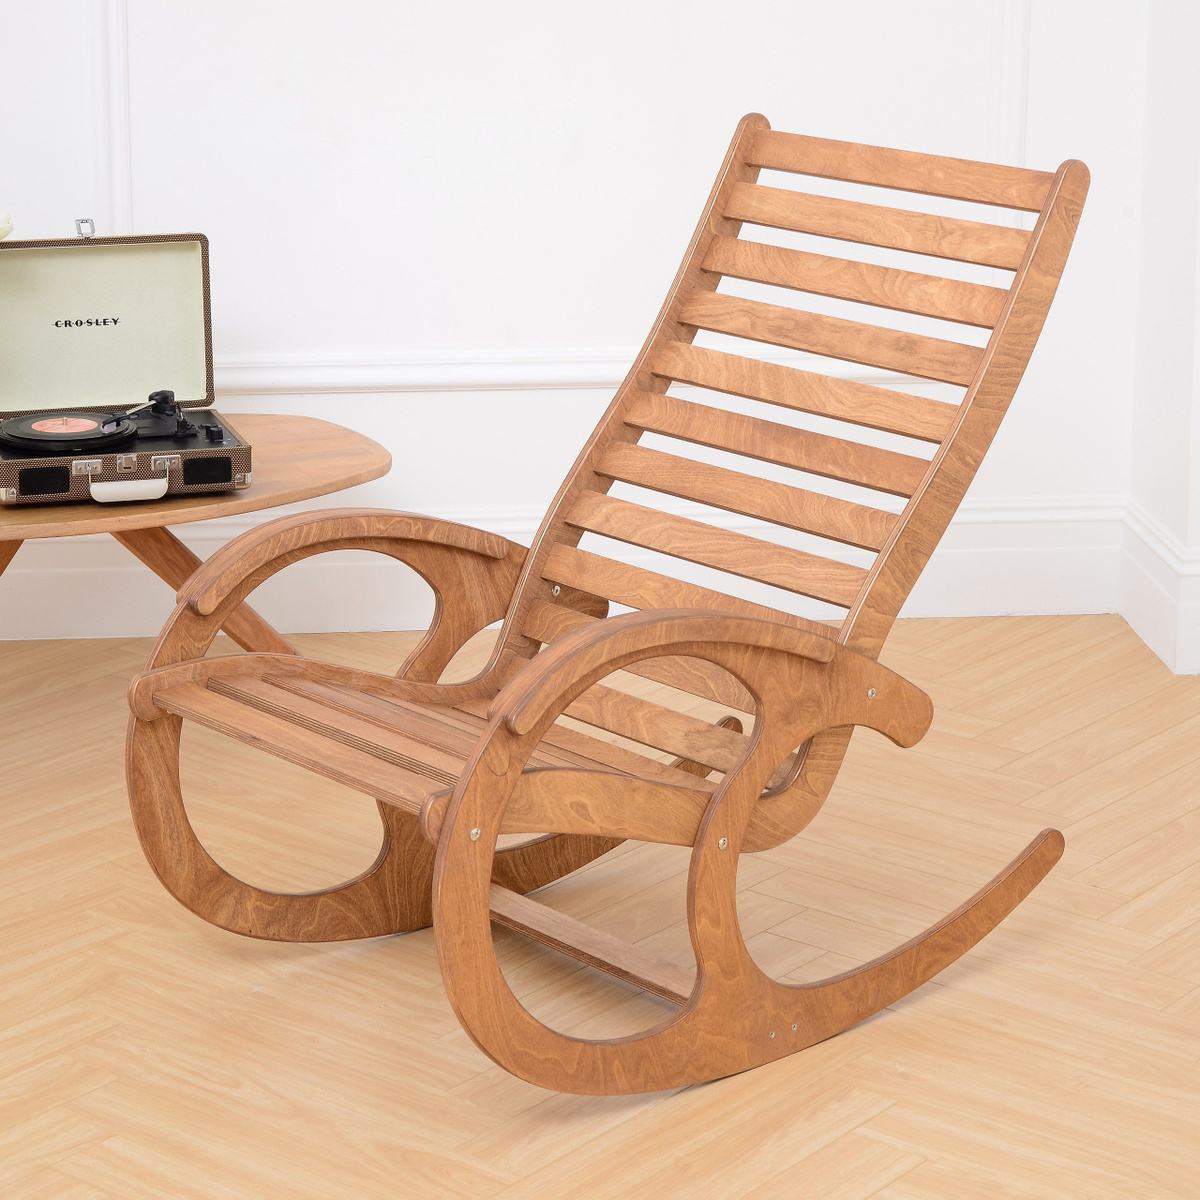 Эргономичность Дизайн и конструктив кресла-качалки обеспечивает удобную посадку и комфорт в эксплуатации. Частое расположение ламелей позволяет использовать его без дополнительных накидок.  Кресло выдерживает нагрузку до 120 кг.